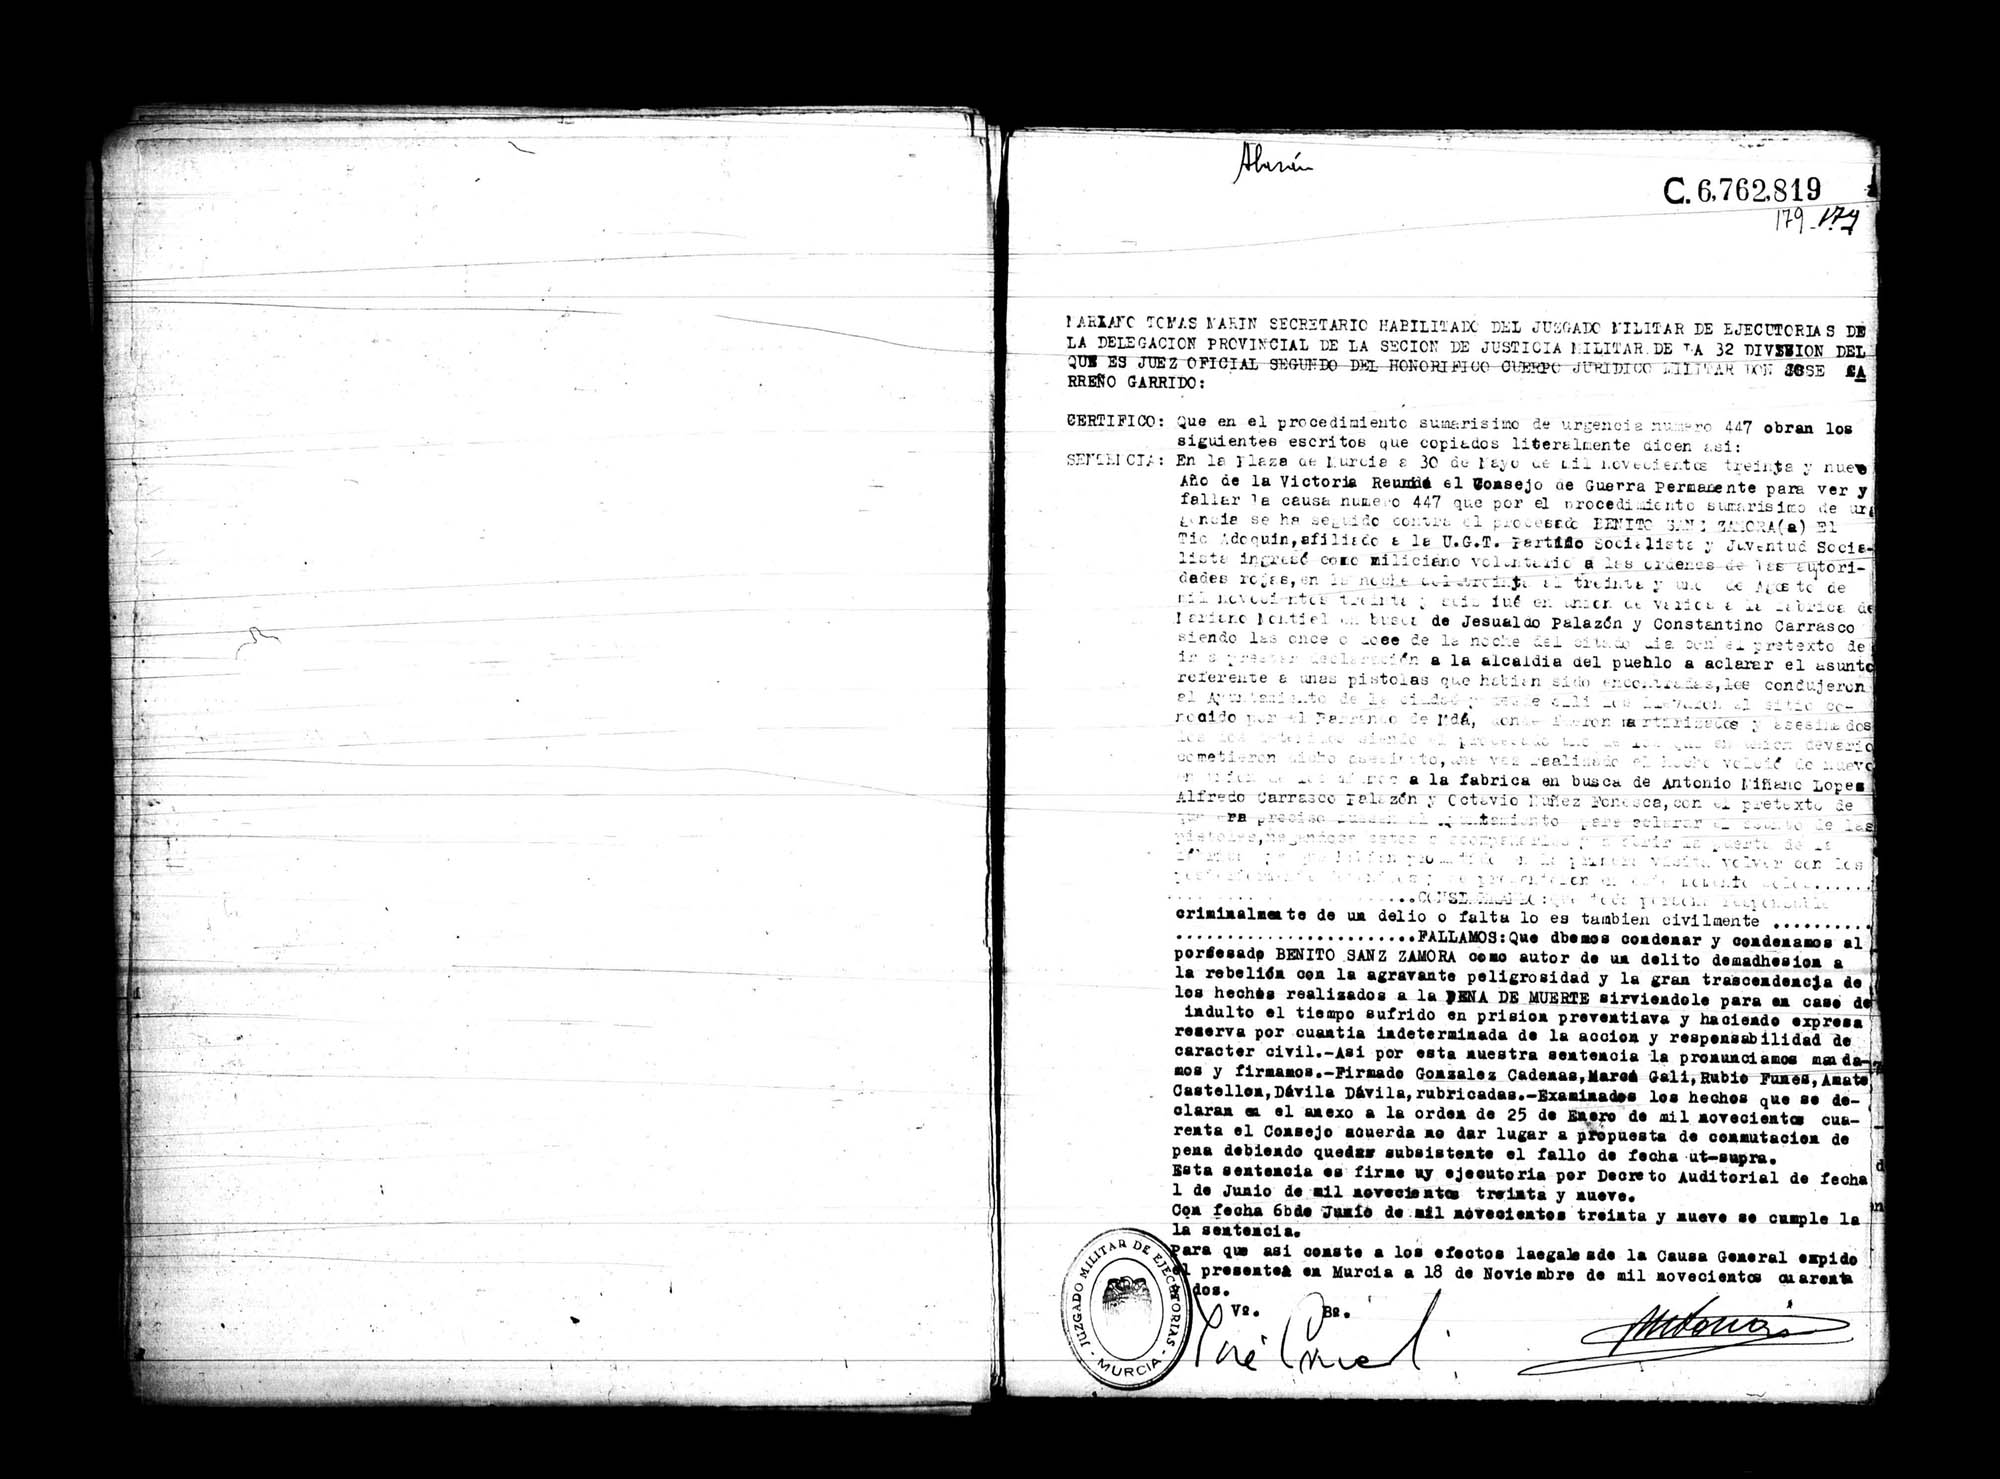 Certificado de la sentencia pronunciada contra Benito Sanz Zamora, causa 447, el 30 de mayo de 1939 en Murcia.